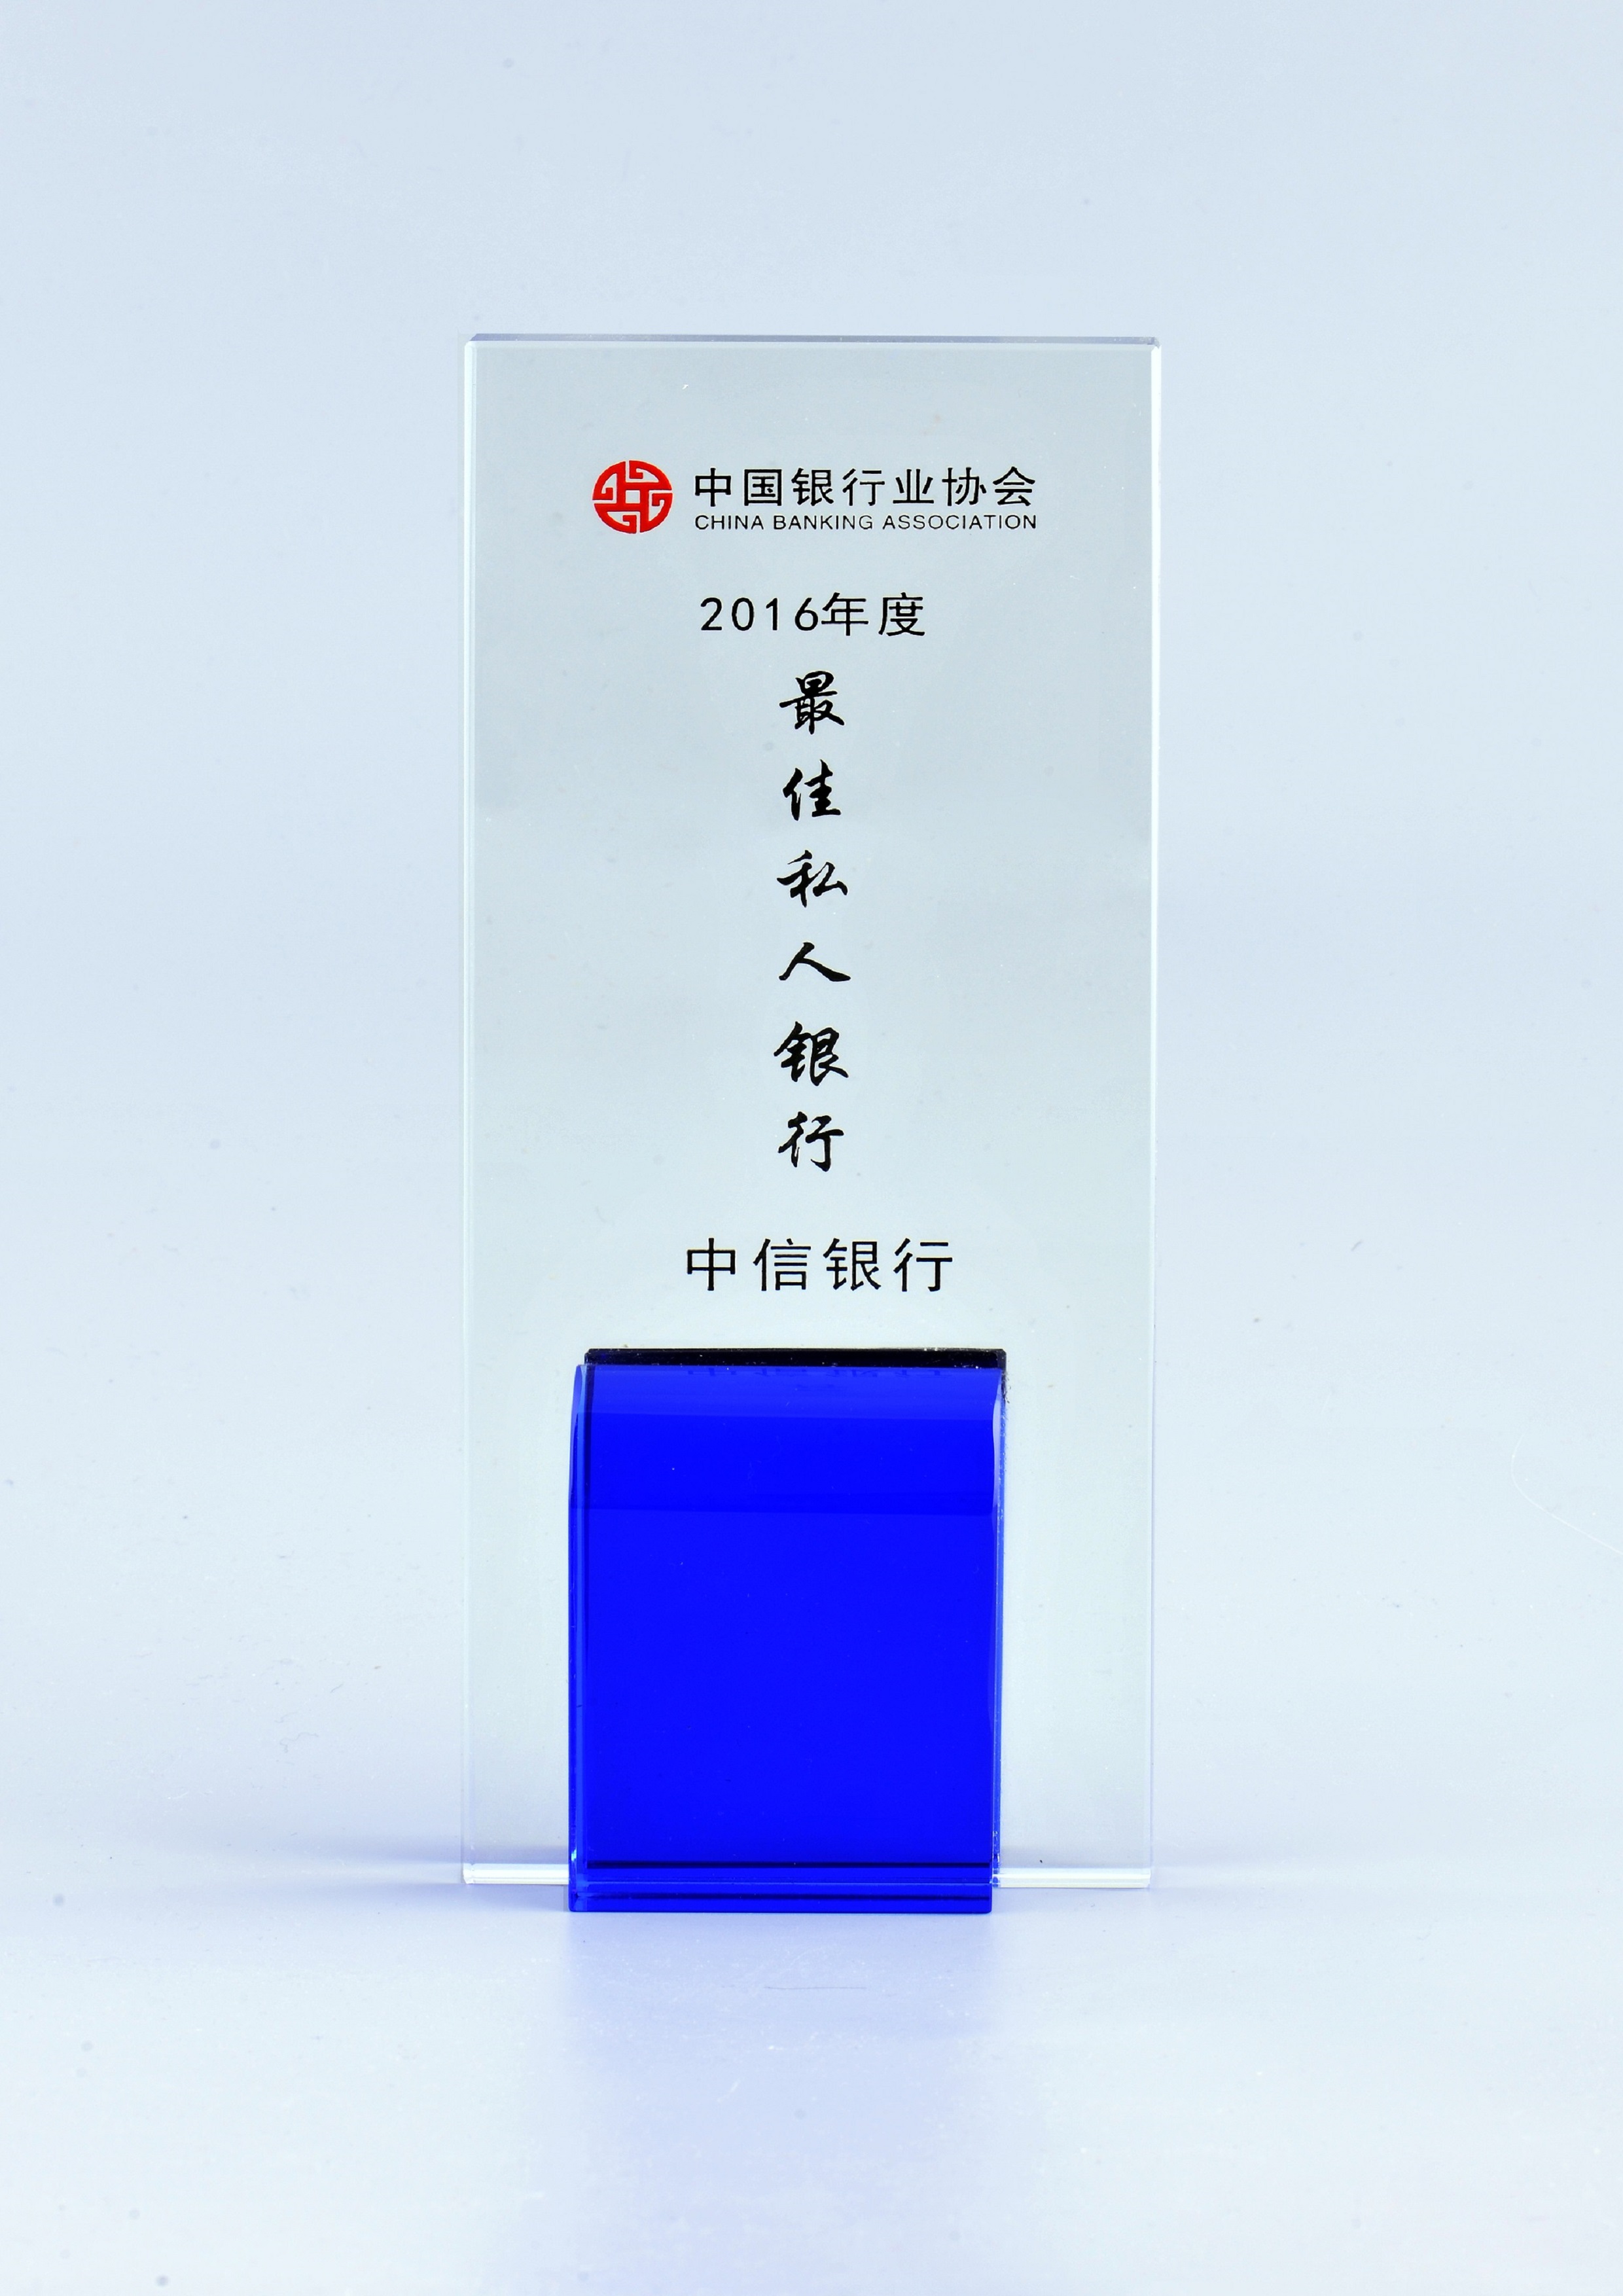 10中國最佳私人銀行獎2016年度.JPG